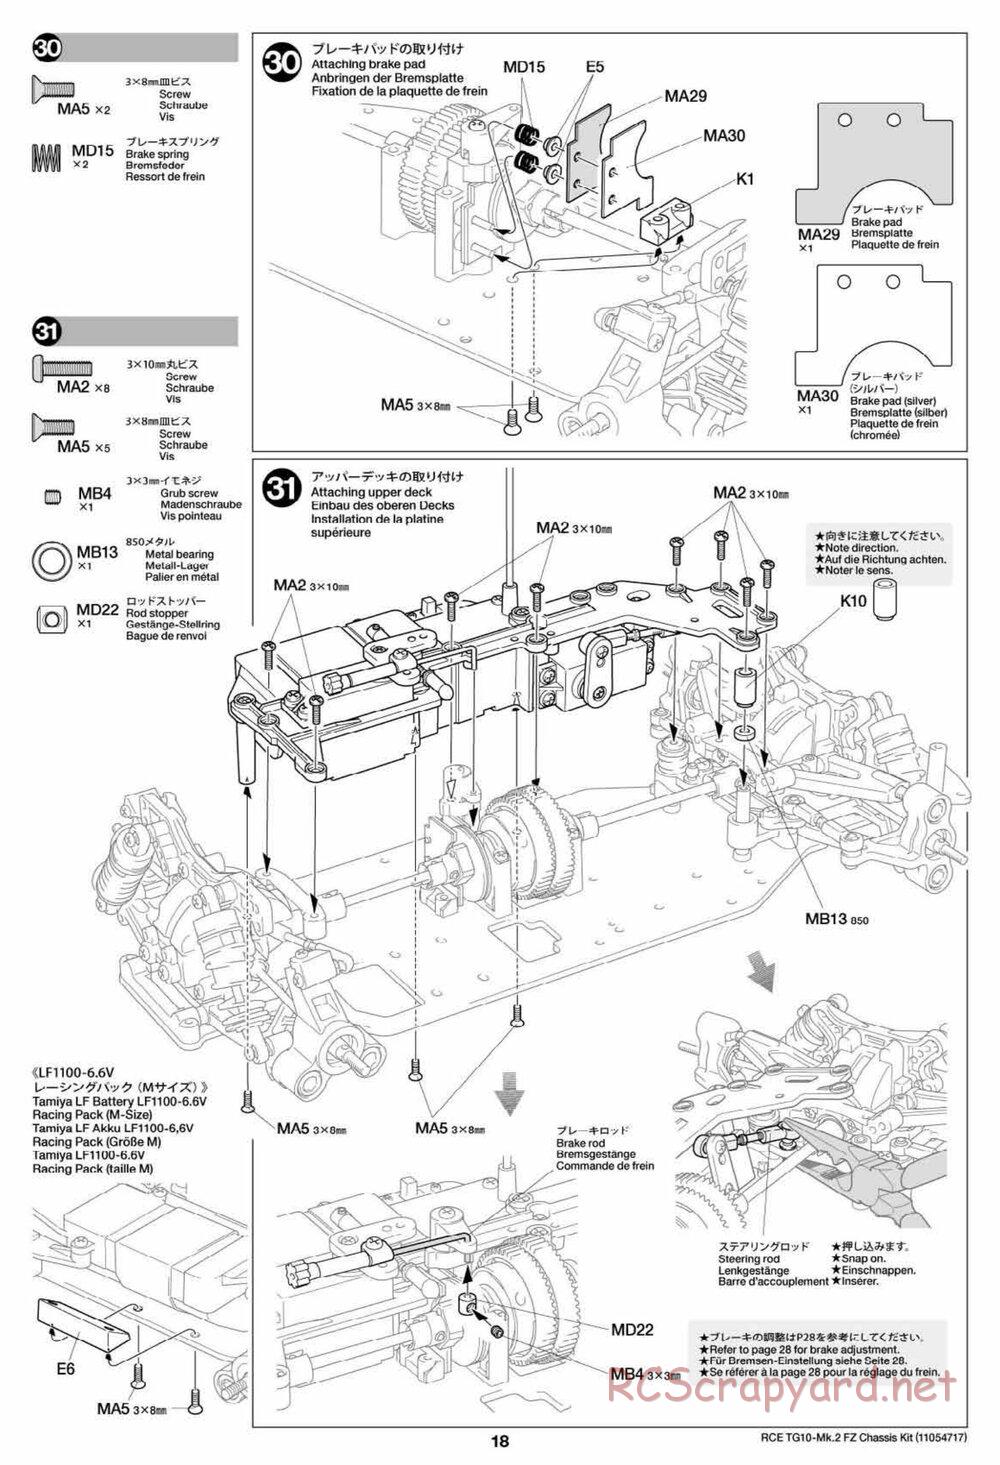 Tamiya - TG10 Mk.2 FZ Chassis - Manual - Page 18